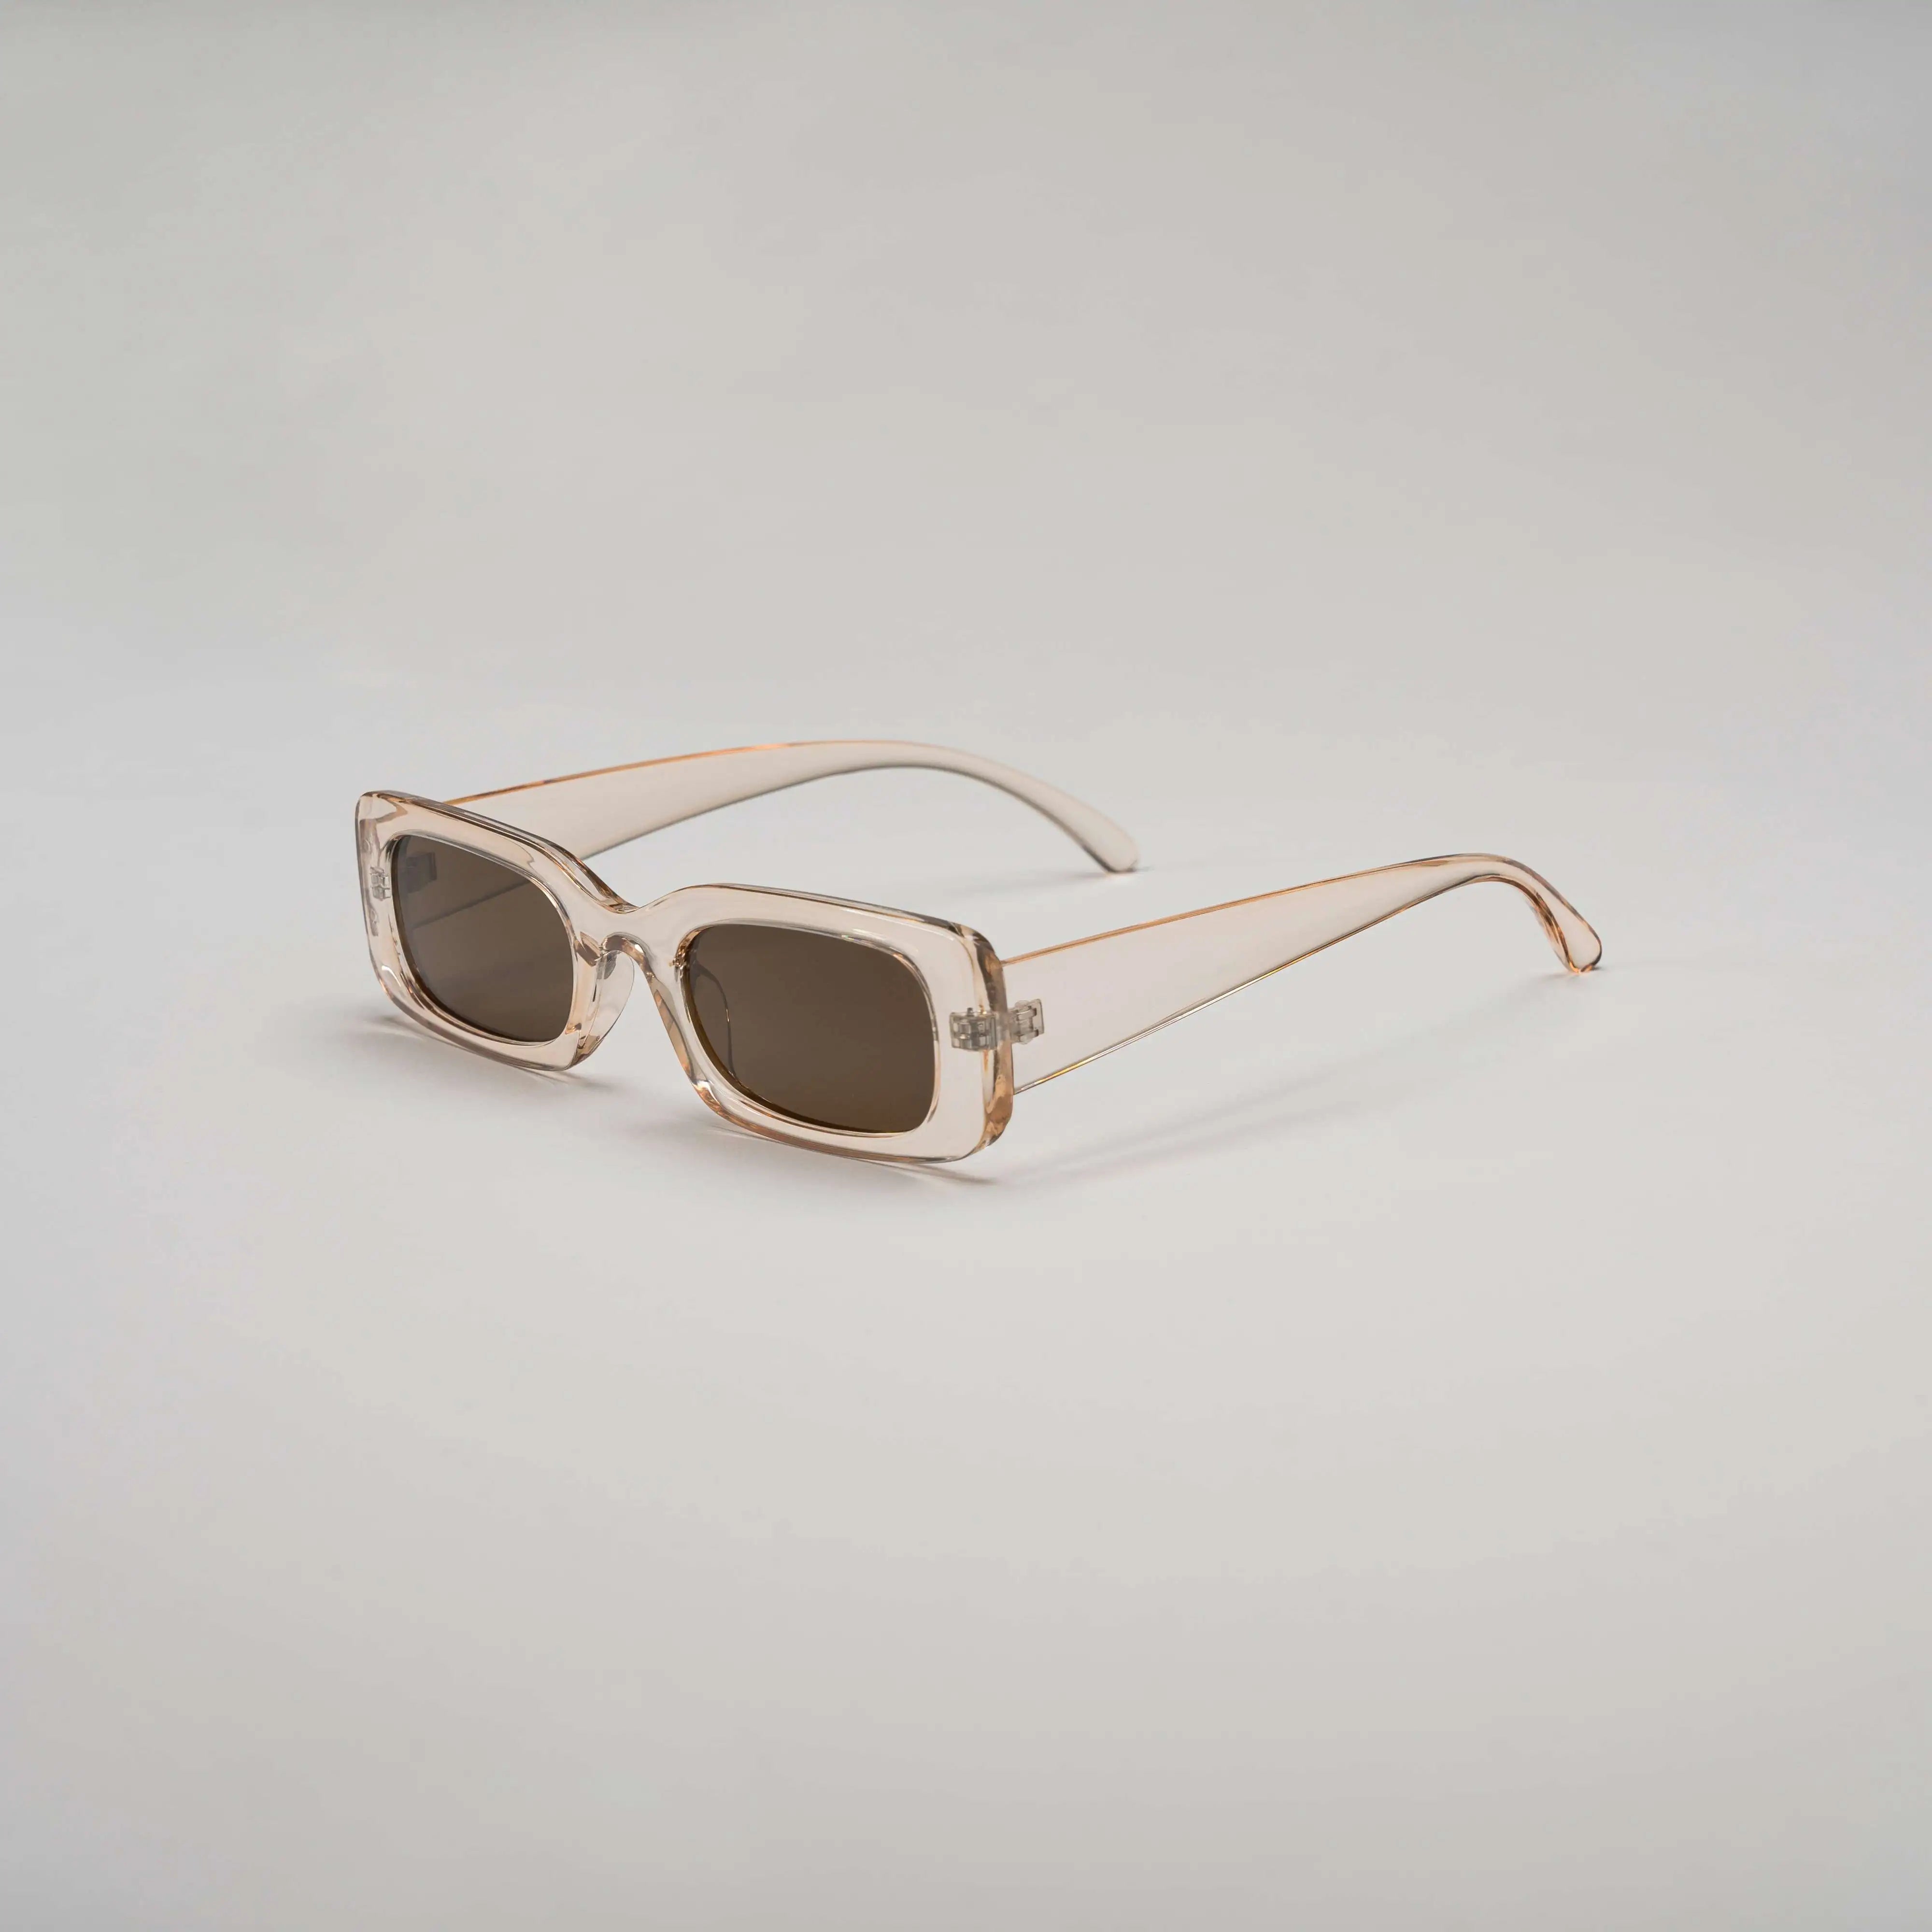 'Tobacco Dock' Retro Oval Sunglasses in Brown